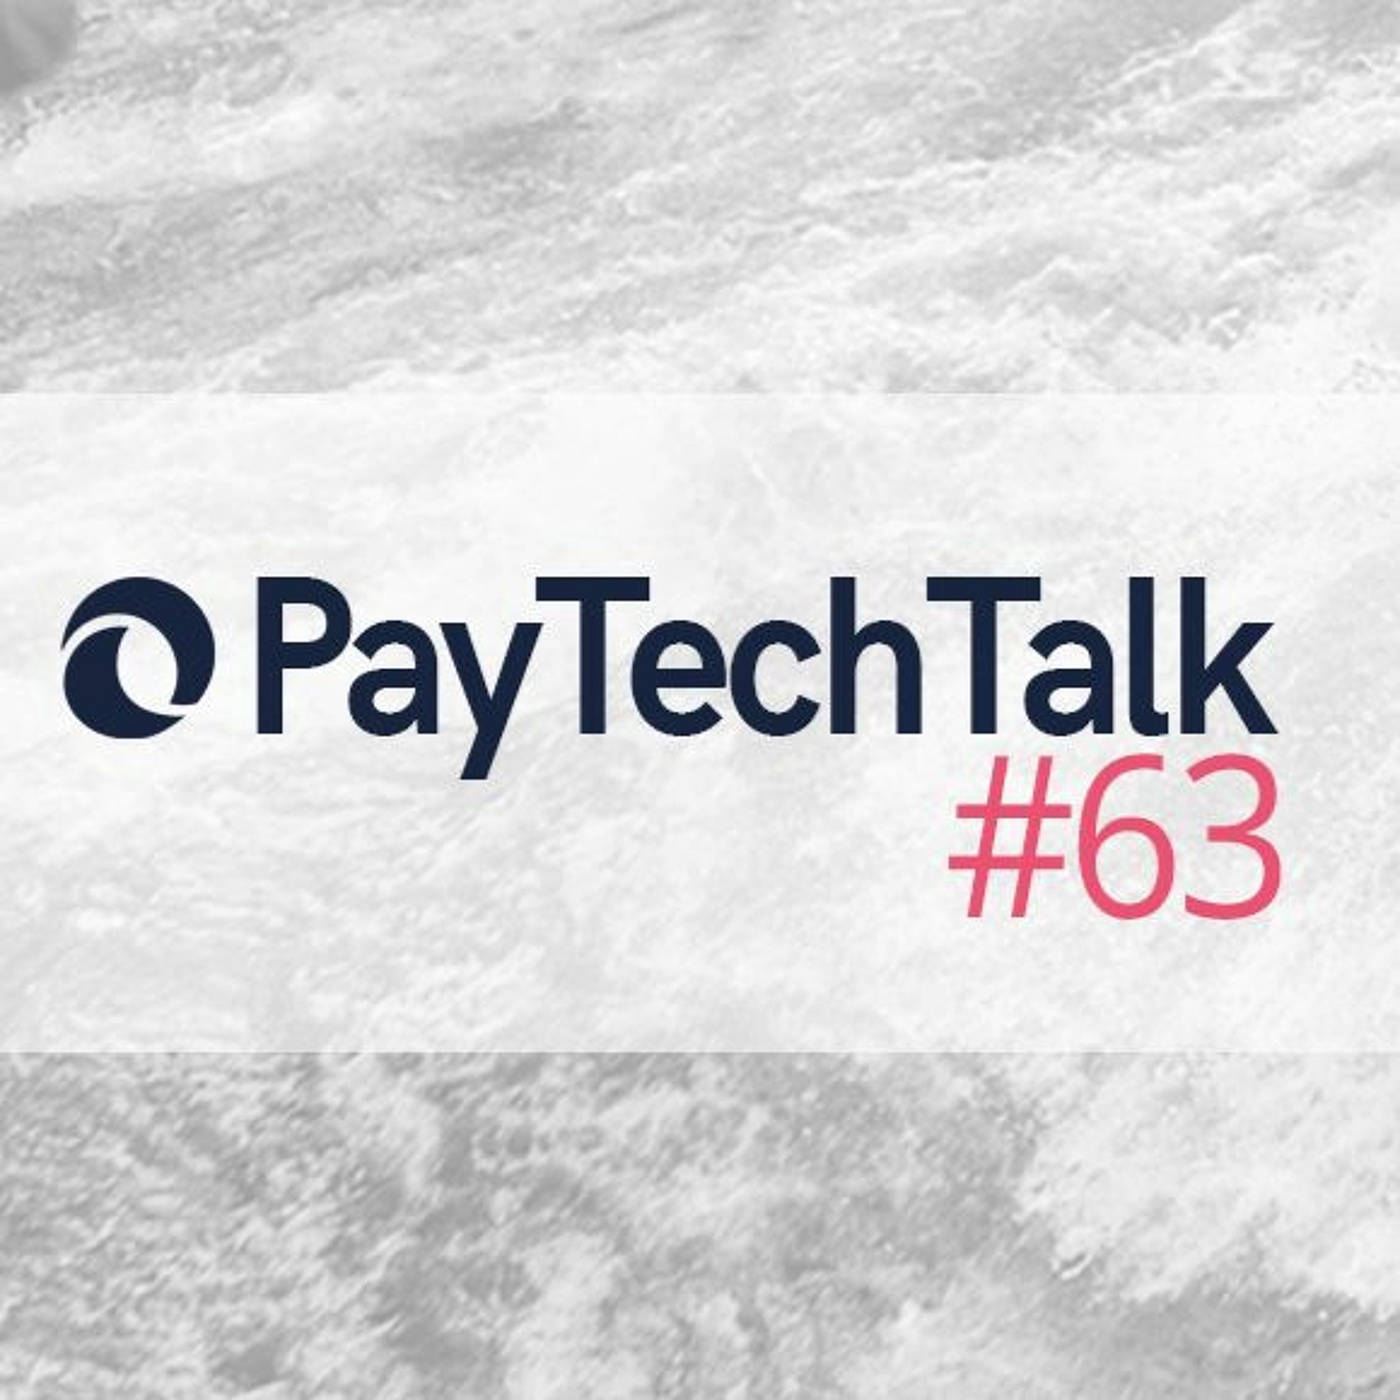 PayTechTalk #63 - 